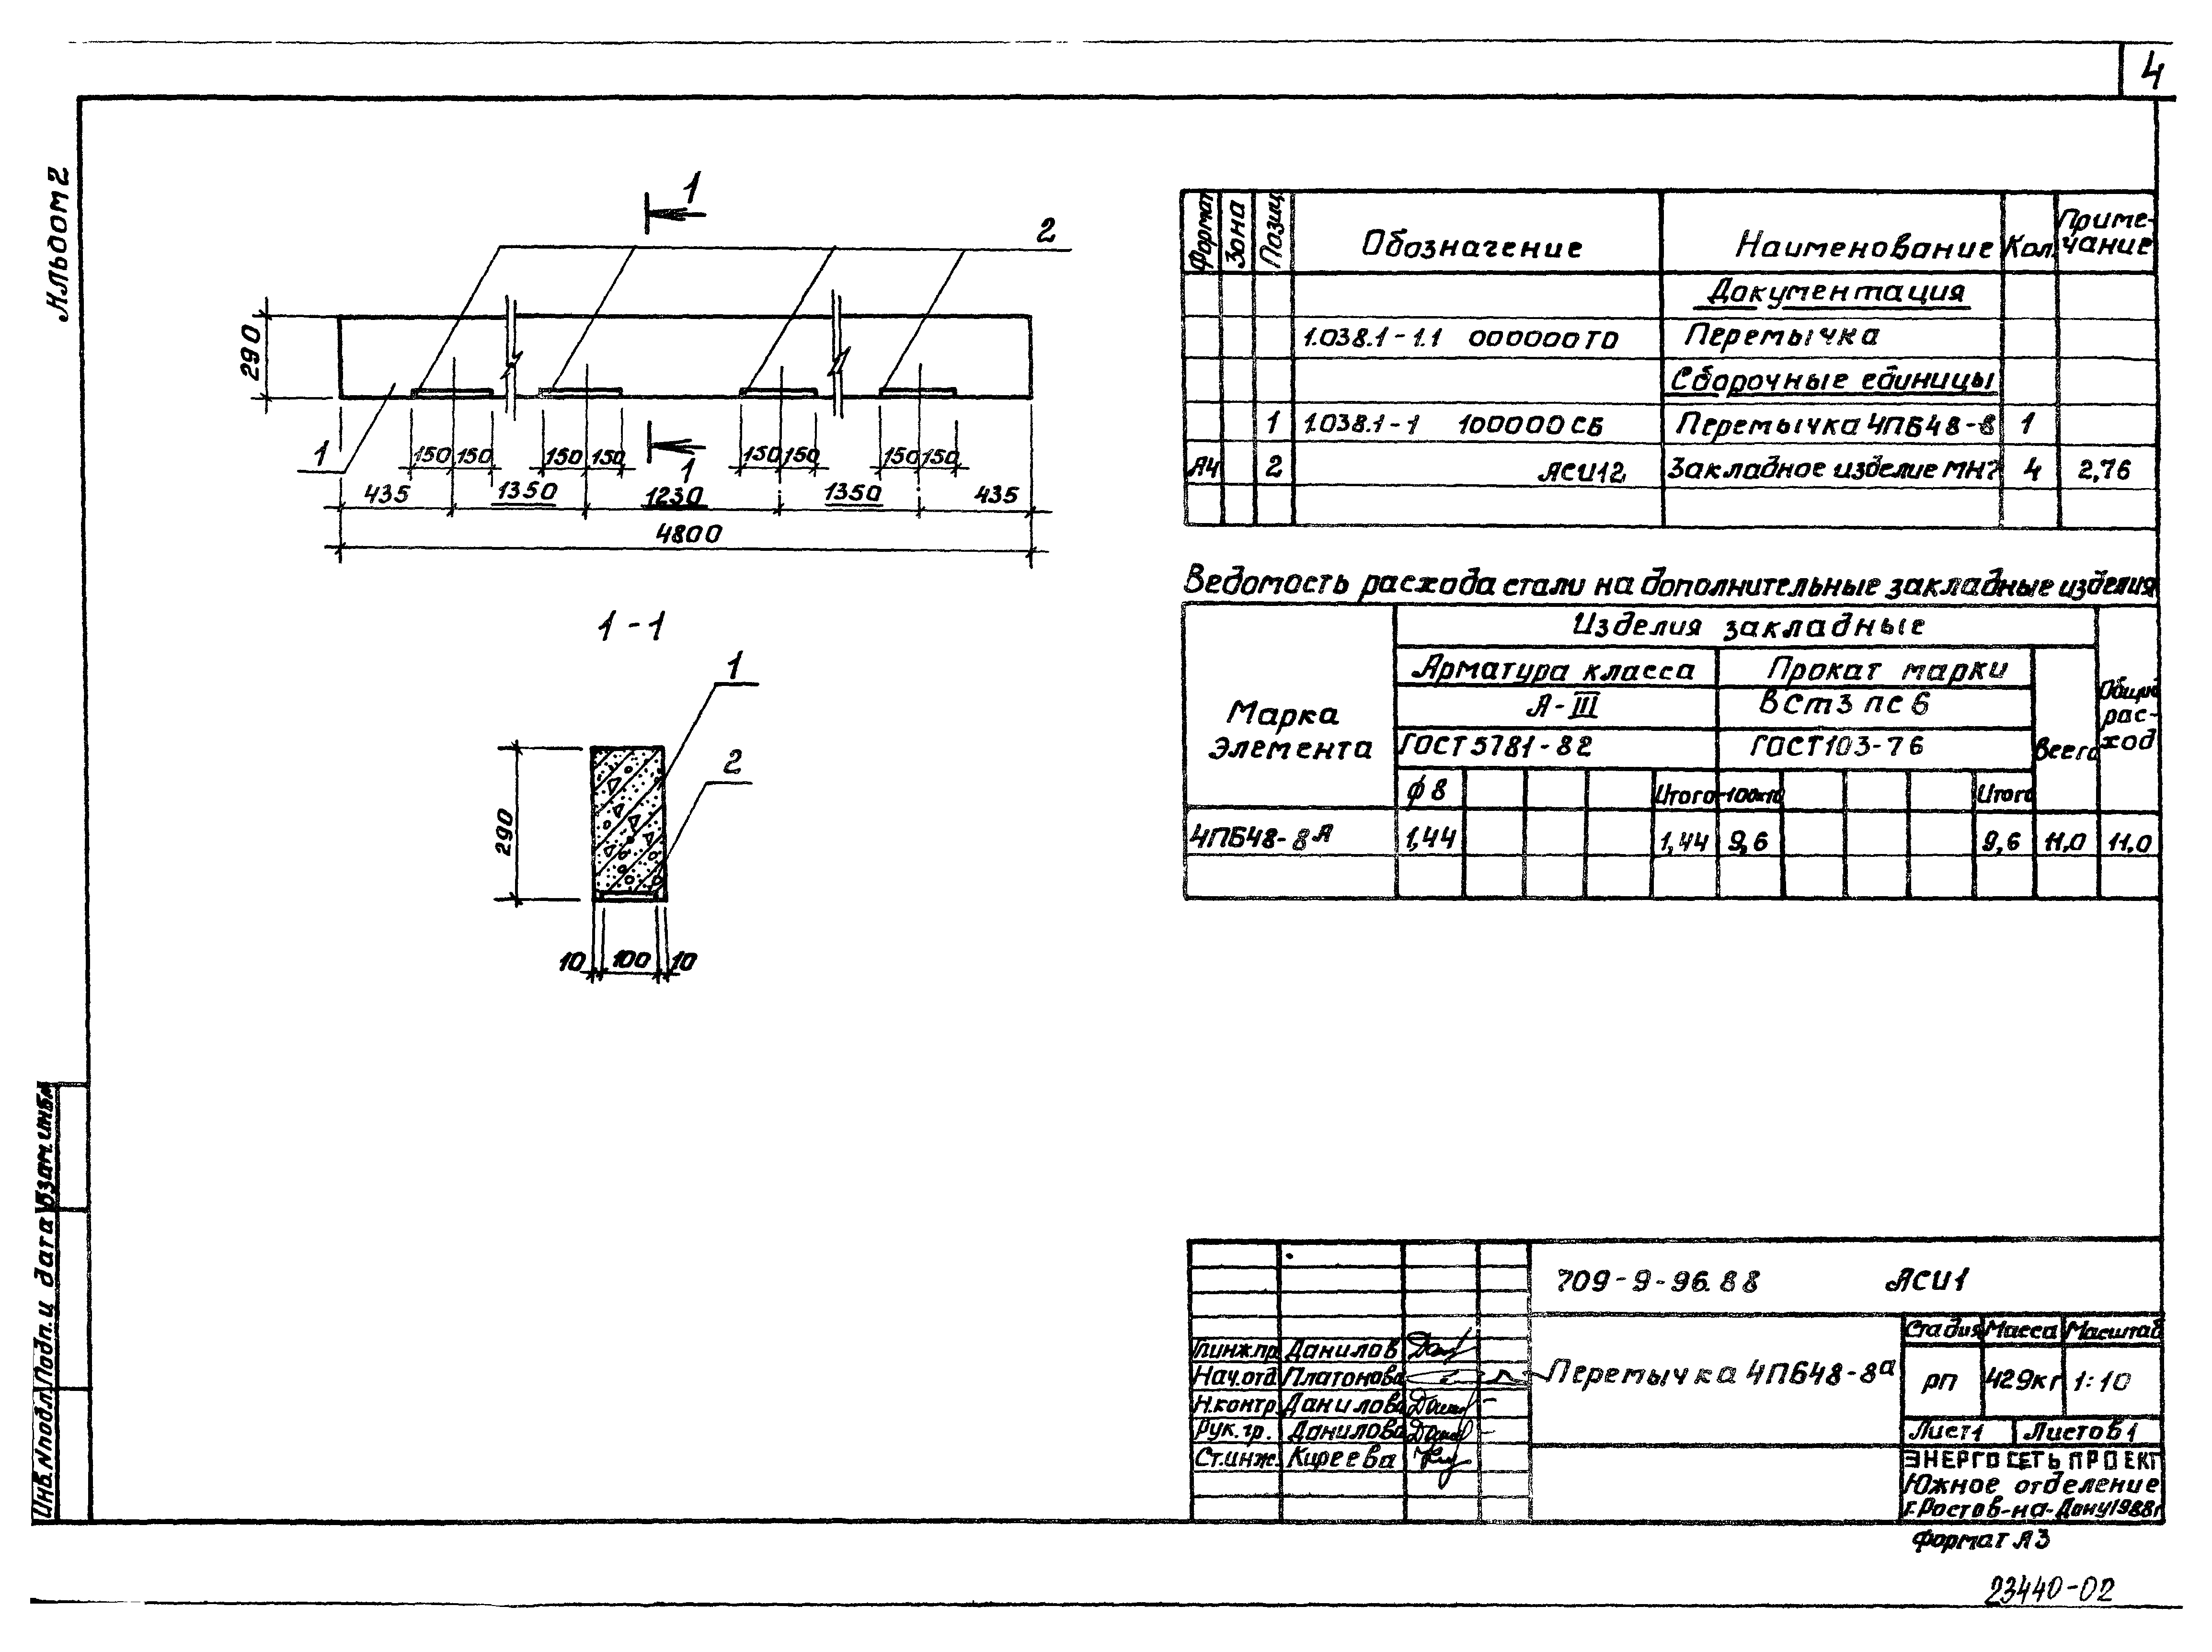 Типовой проект 709-9-96.88